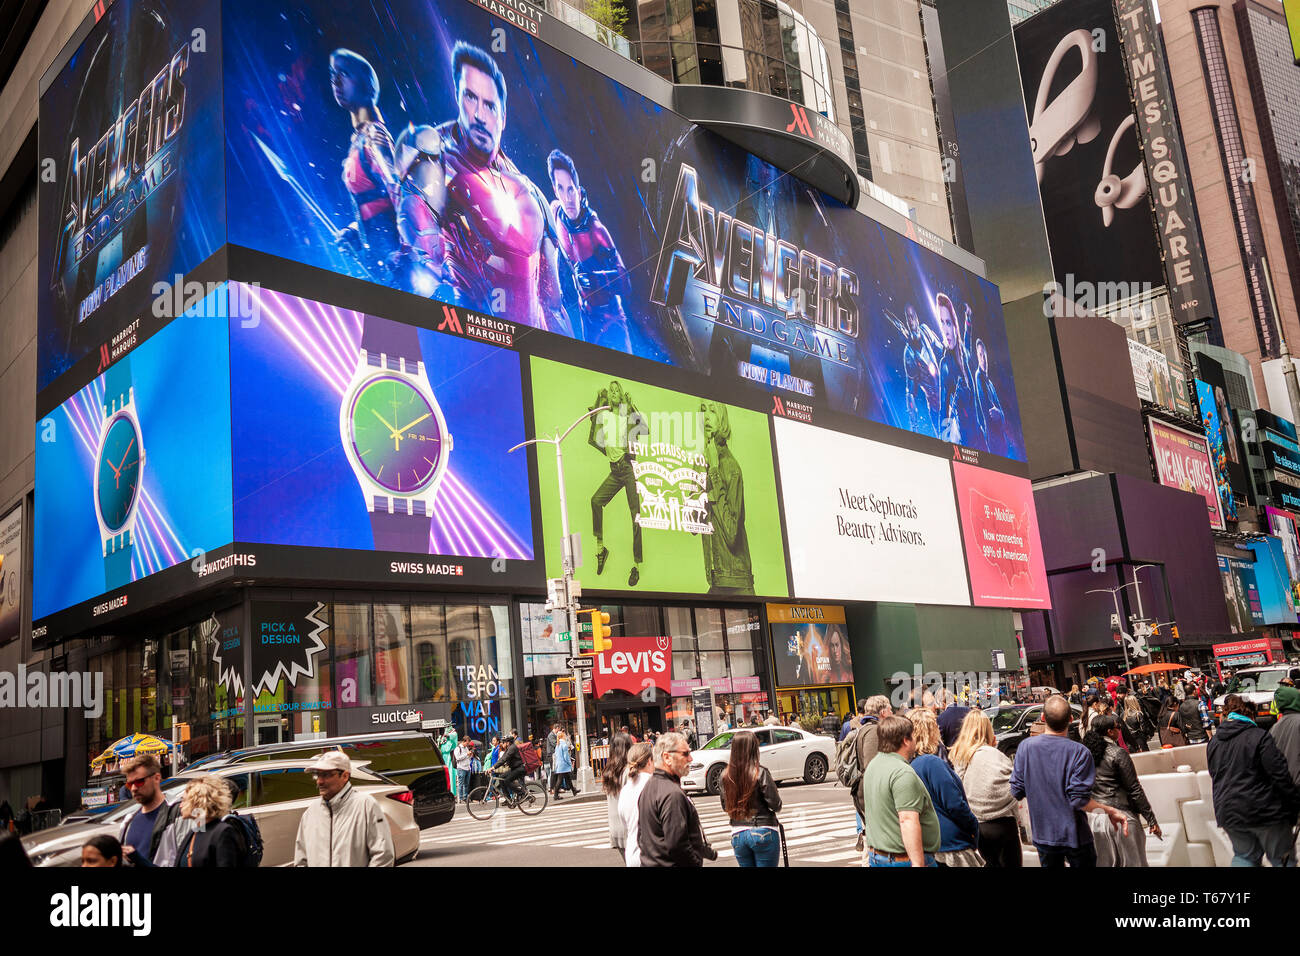 Werbung für Marvel Studios "Avengers: Endgame" in Times Square in New York am Montag nach dem Blockbuster öffnung Wochenende, 29. April 2019. Die Walt Disney Co. film gemacht hat schätzungsweise $ 1,2 Mrd. weltweit auf seine Öffnung und ist der einzige Film je $ 1 Mrd. auf seinem ersten Wochenende übertroffen zu haben, heraus schlug einen anderen Avengers Film, "Avengers: Infinity Krieg" vom letzten Jahr. (© Richard B. Levine) Stockfoto